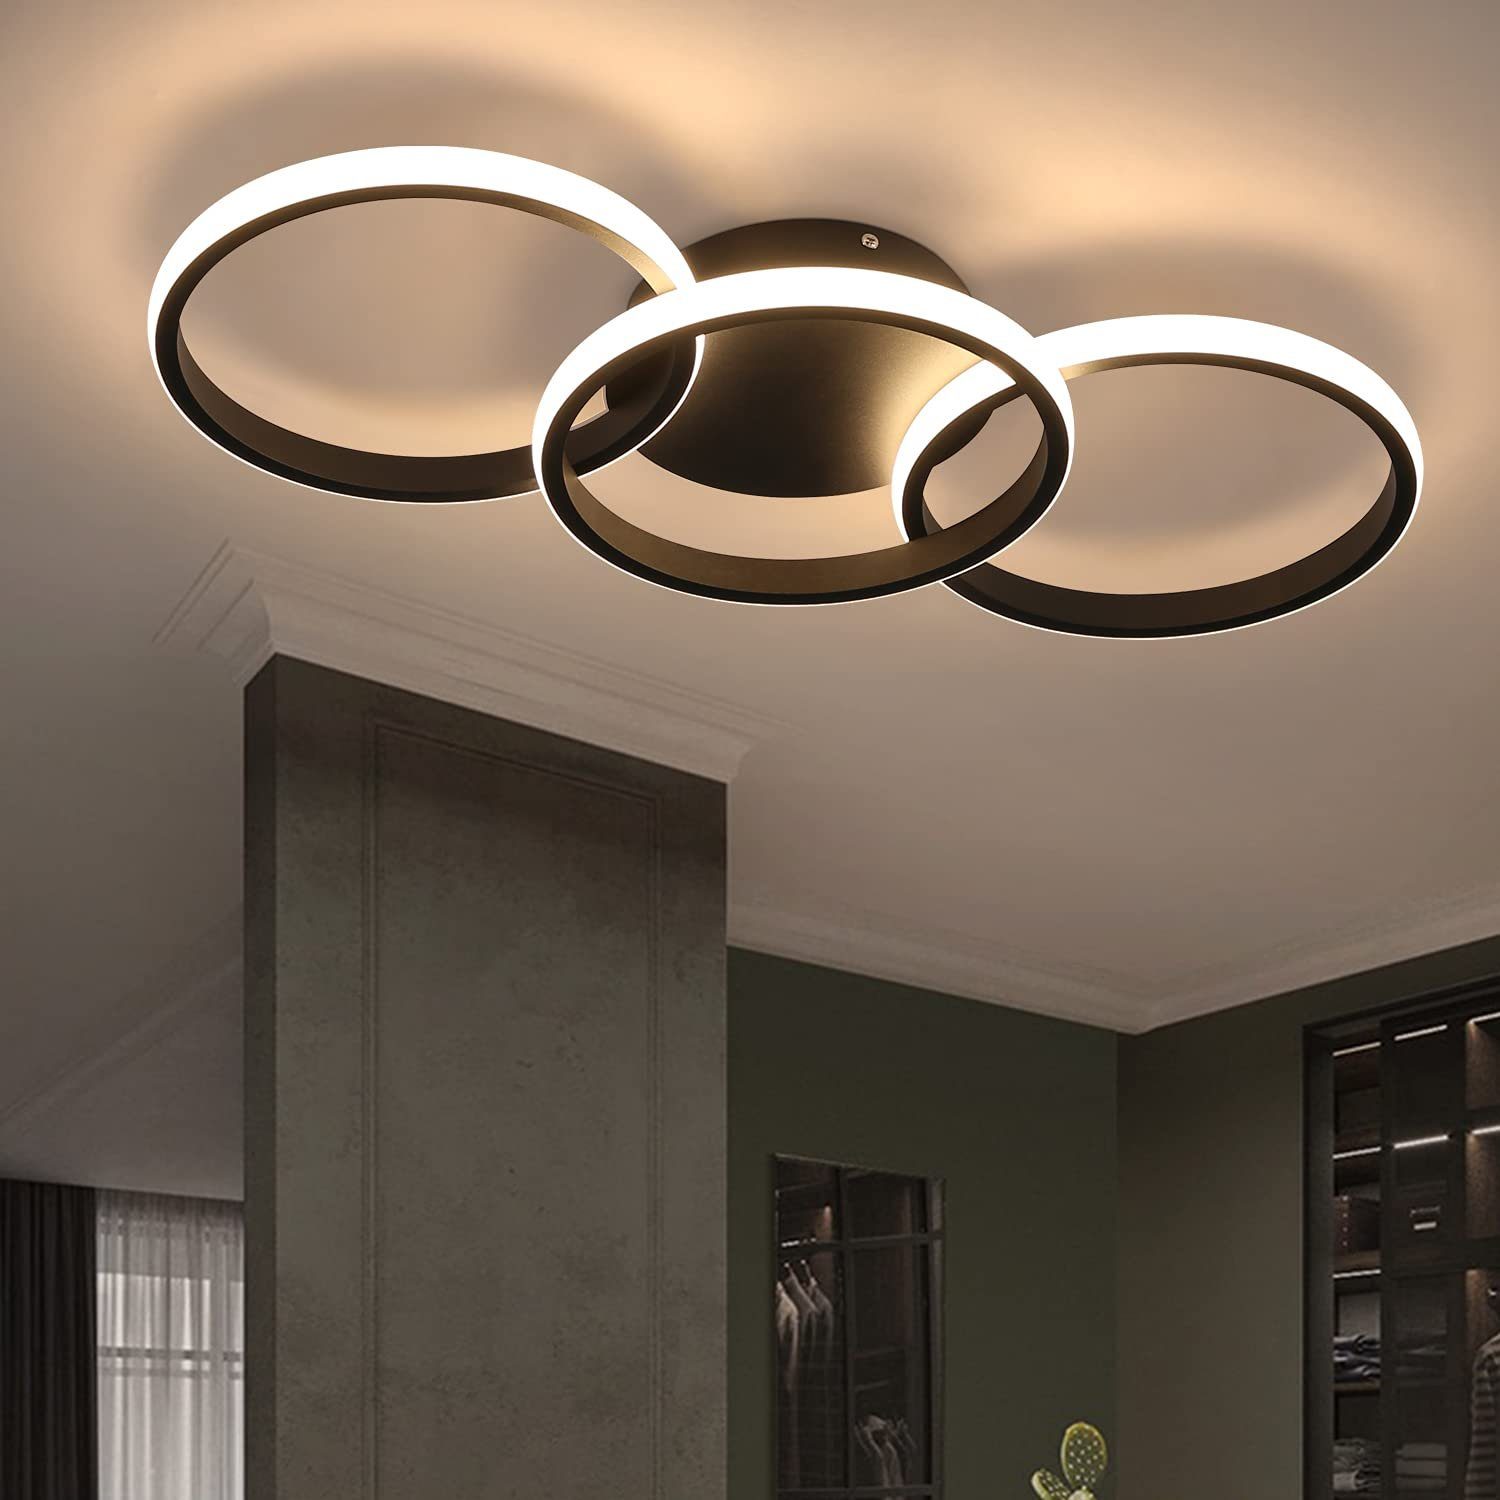 LED 7 Watt Decken Leuchte Haus Lampe Wohnzimmer modern Flur Deckenbeleuchtung 